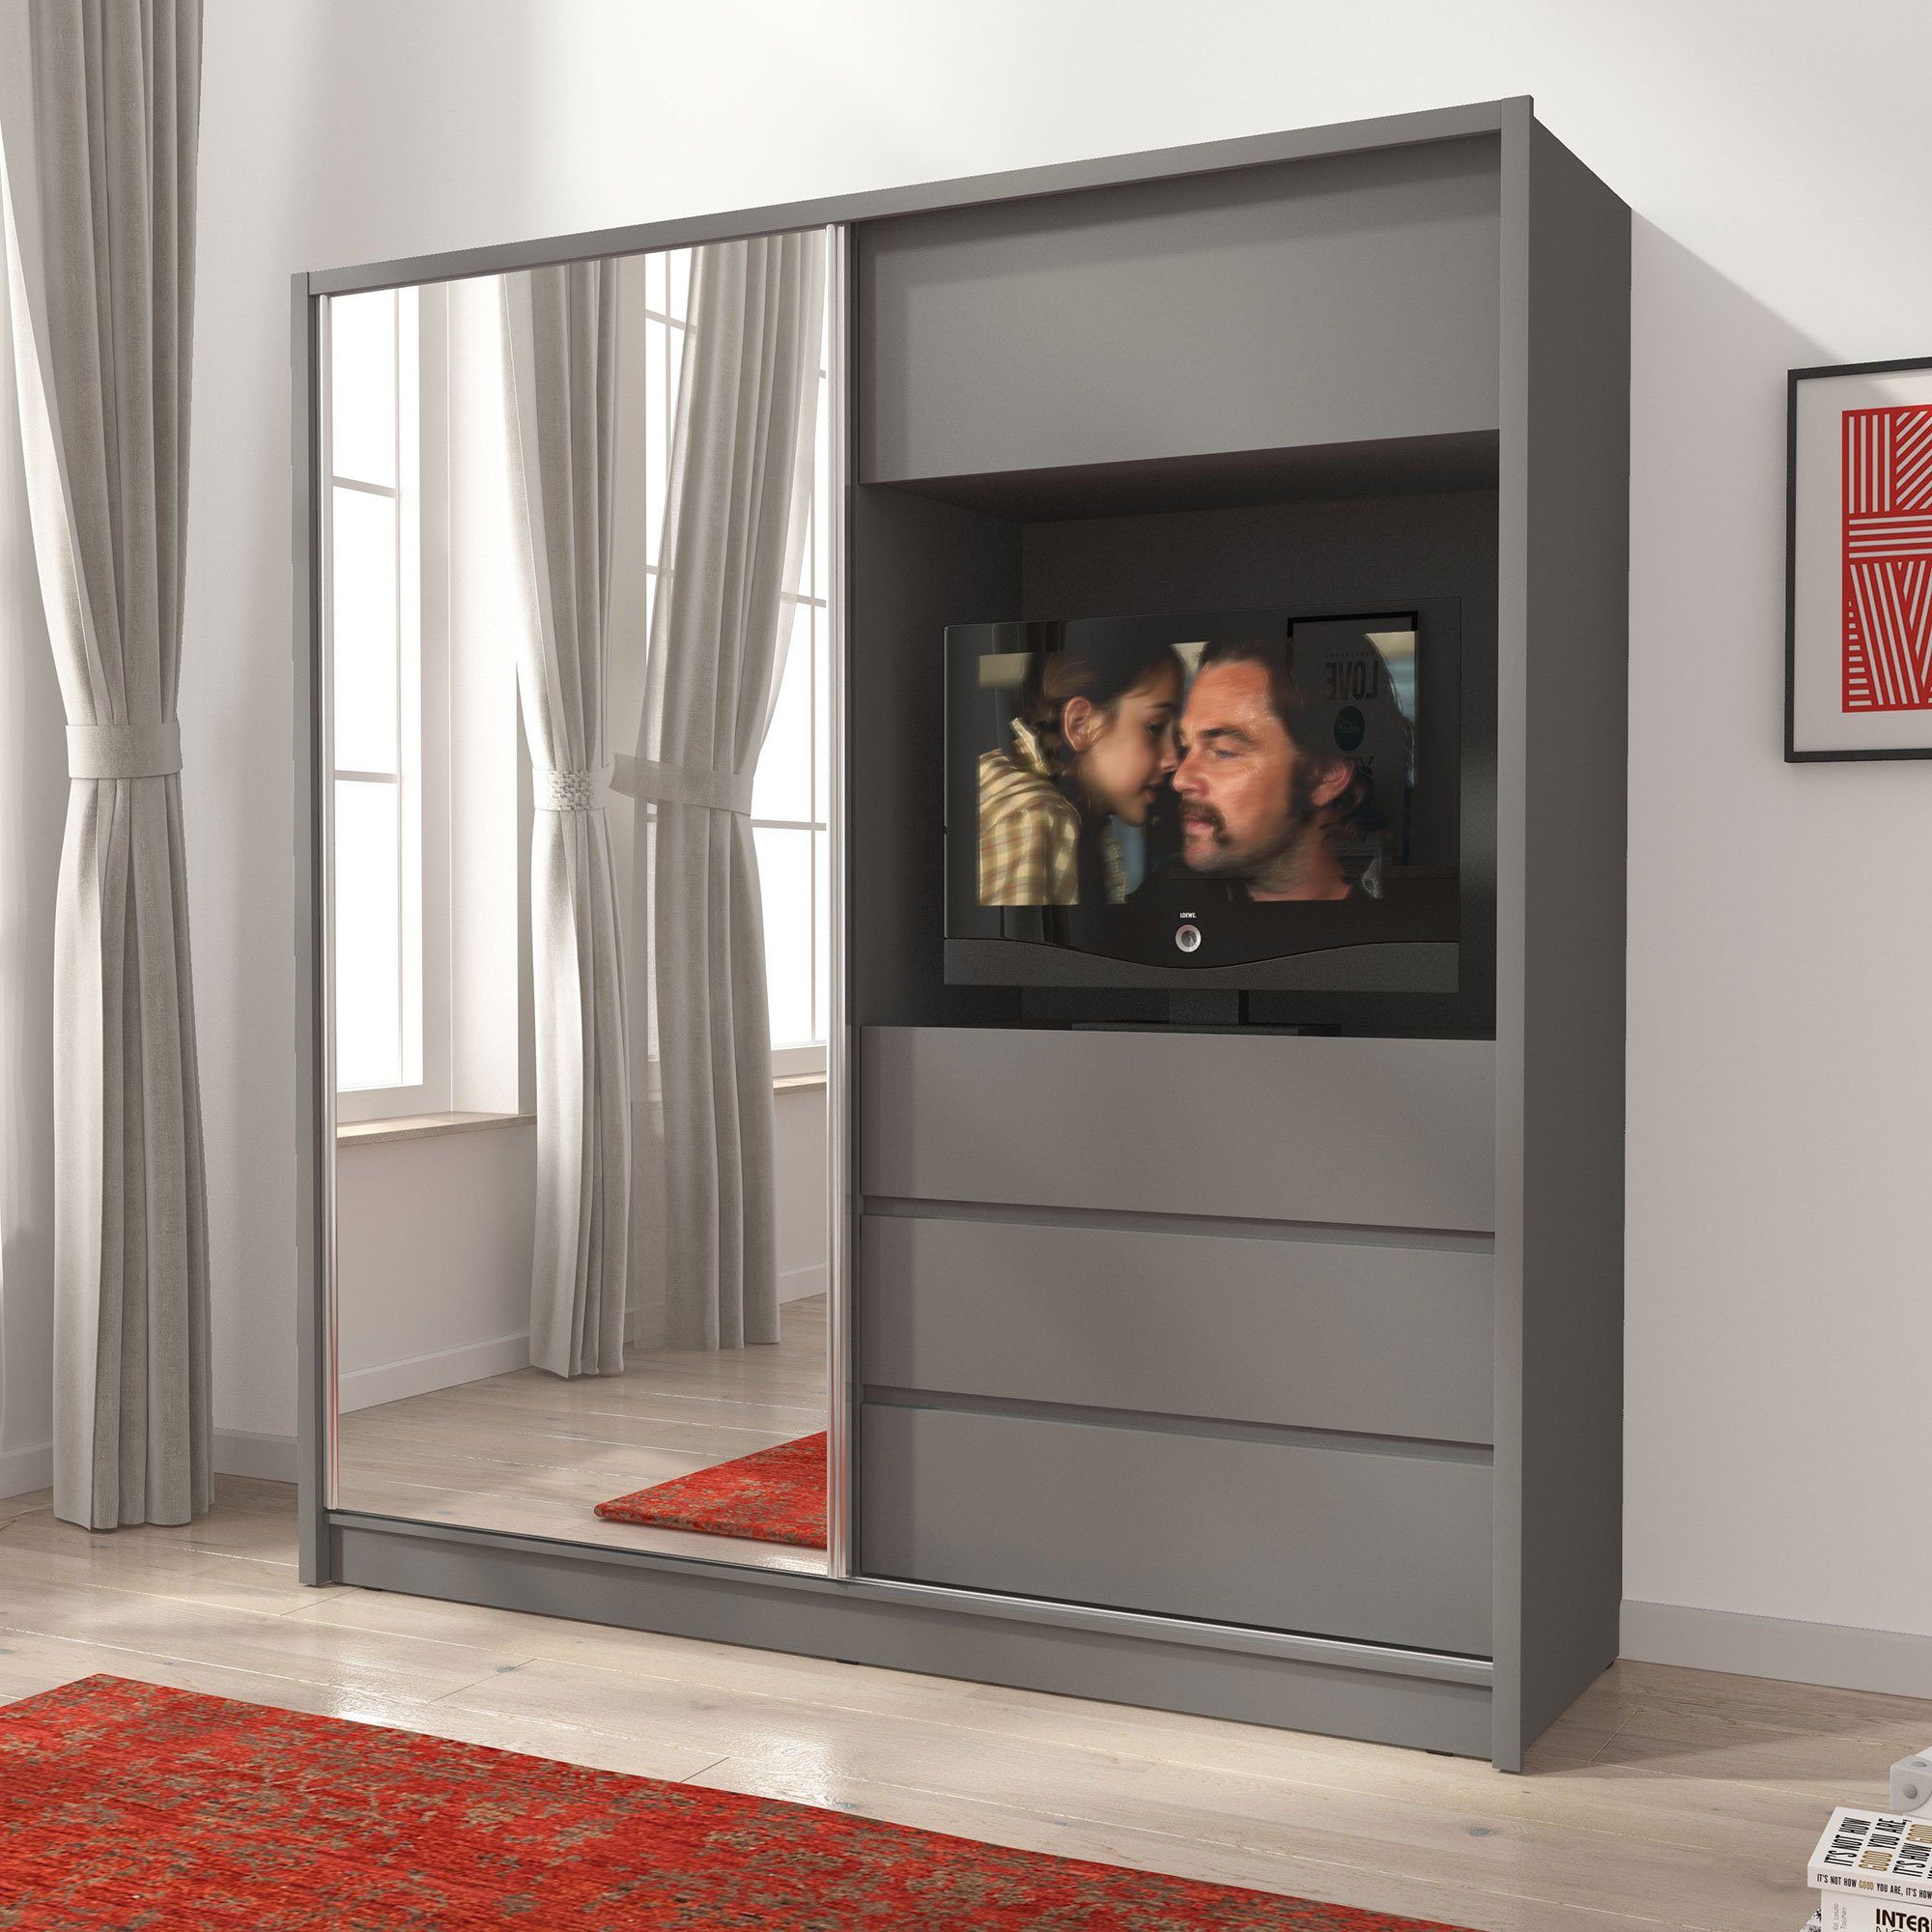 Luxusbetten24 Baidani Kleiderschrank Schrank Cosmo mit TV Vorrichtung Grau | Kleiderschränke